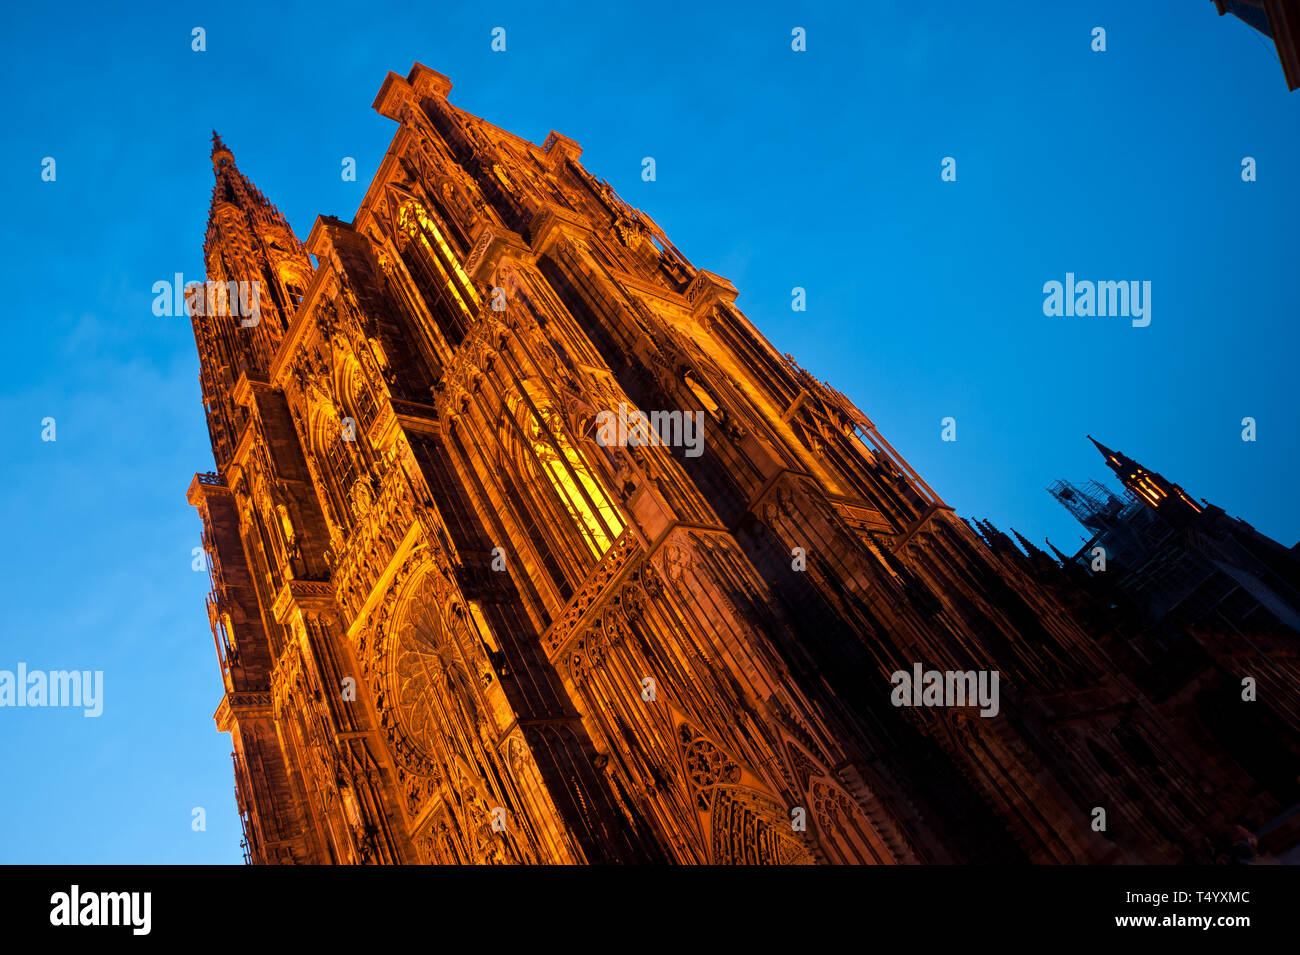 Das Liebfrauenmünster zu Straßburg ist ein römisch-del katholisches Gotteshaus und gehört zu den bedeutendsten Kathedralen der Europäischen Architekturges Foto Stock